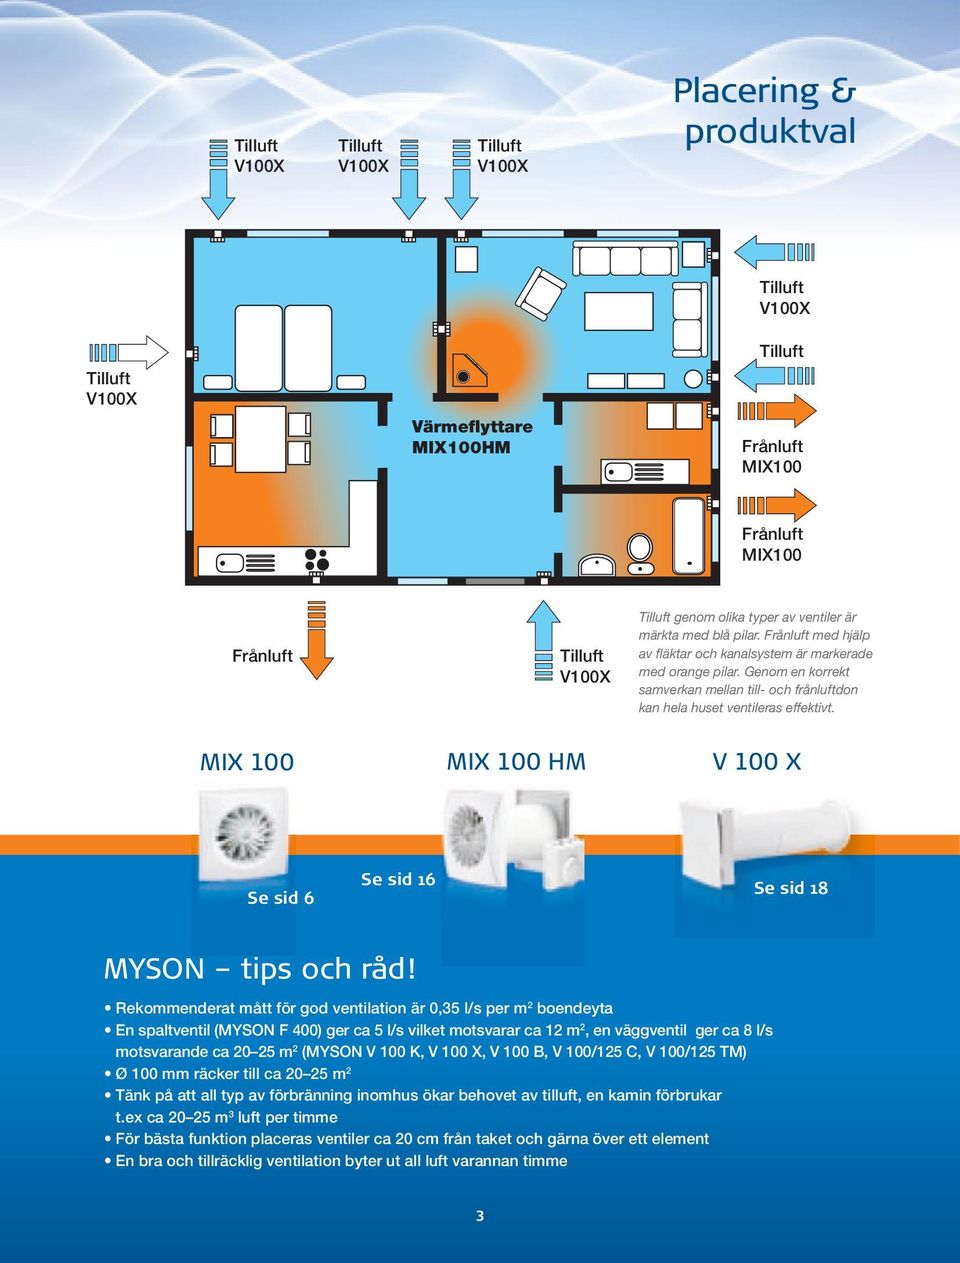 Genom en korrekt samverkan mellan till- och frånluftdon kan hela huset ventileras effektivt. MIX 100 MIX 100 HM V 100 X Se sid 6 Se sid 16 Se sid 18 MYSON tips och råd!